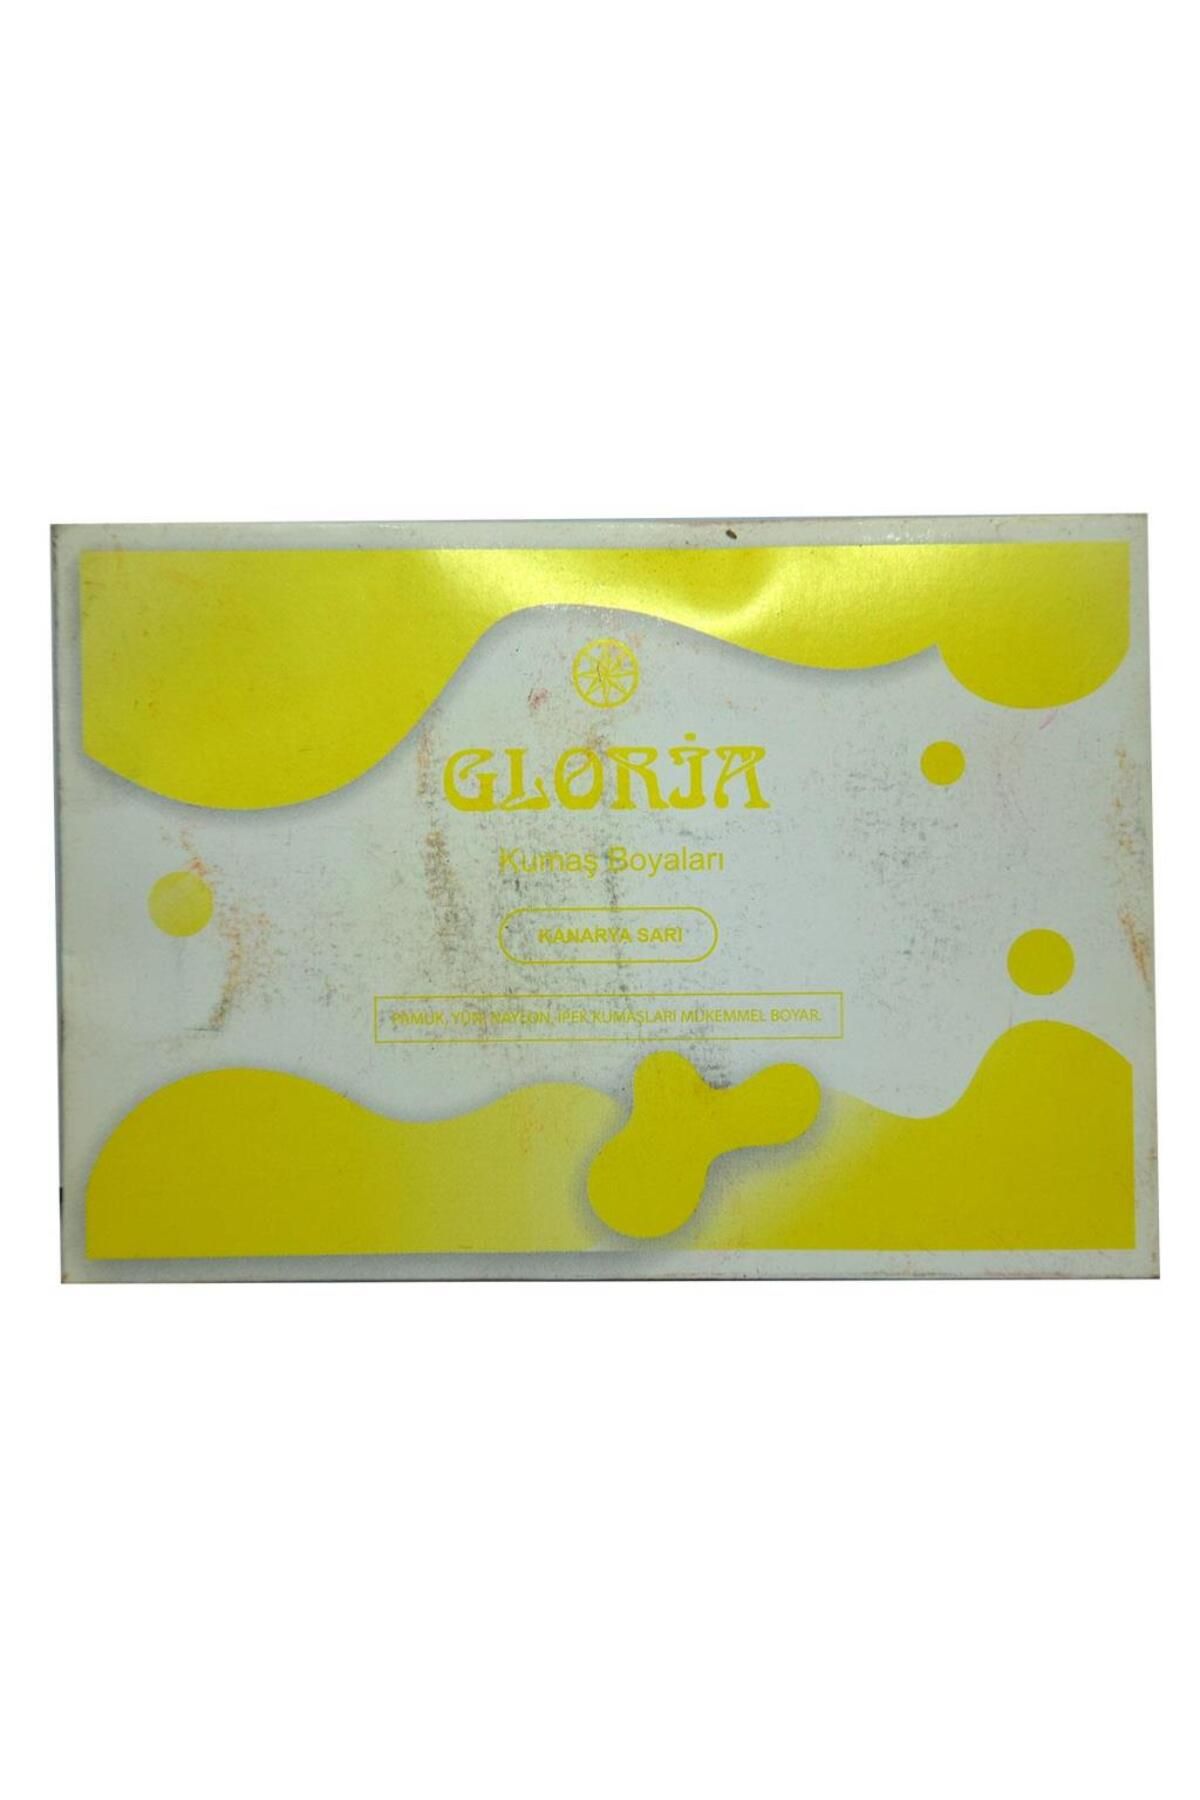 Gloria Kanarya Sarı Renk Pamuk Yün Naylon Ipek Kumaş Boyası 10gr